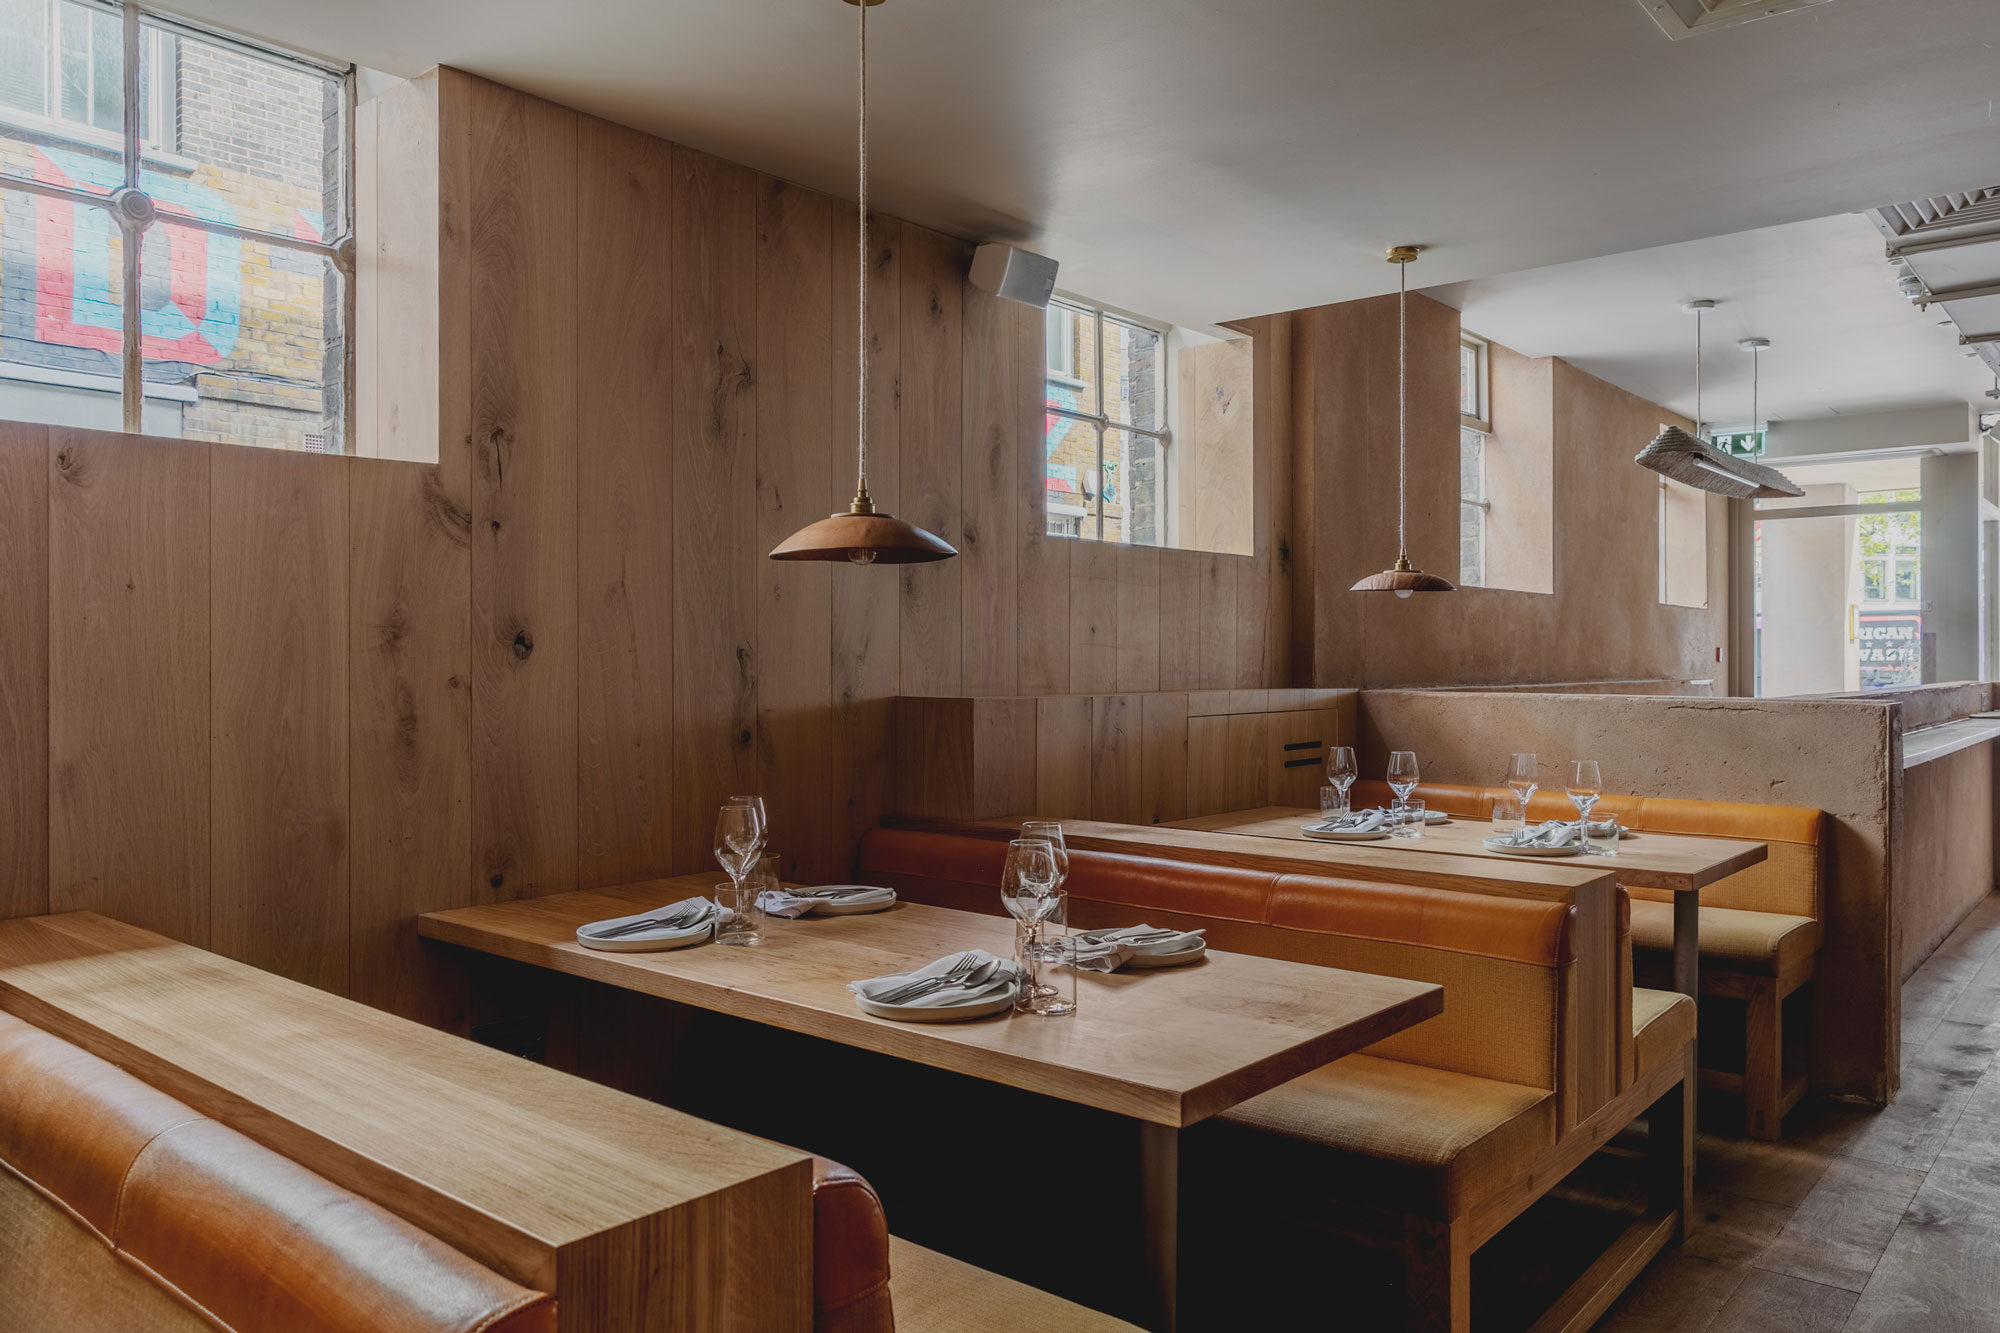 Oak cladded walls in popular London restaurant